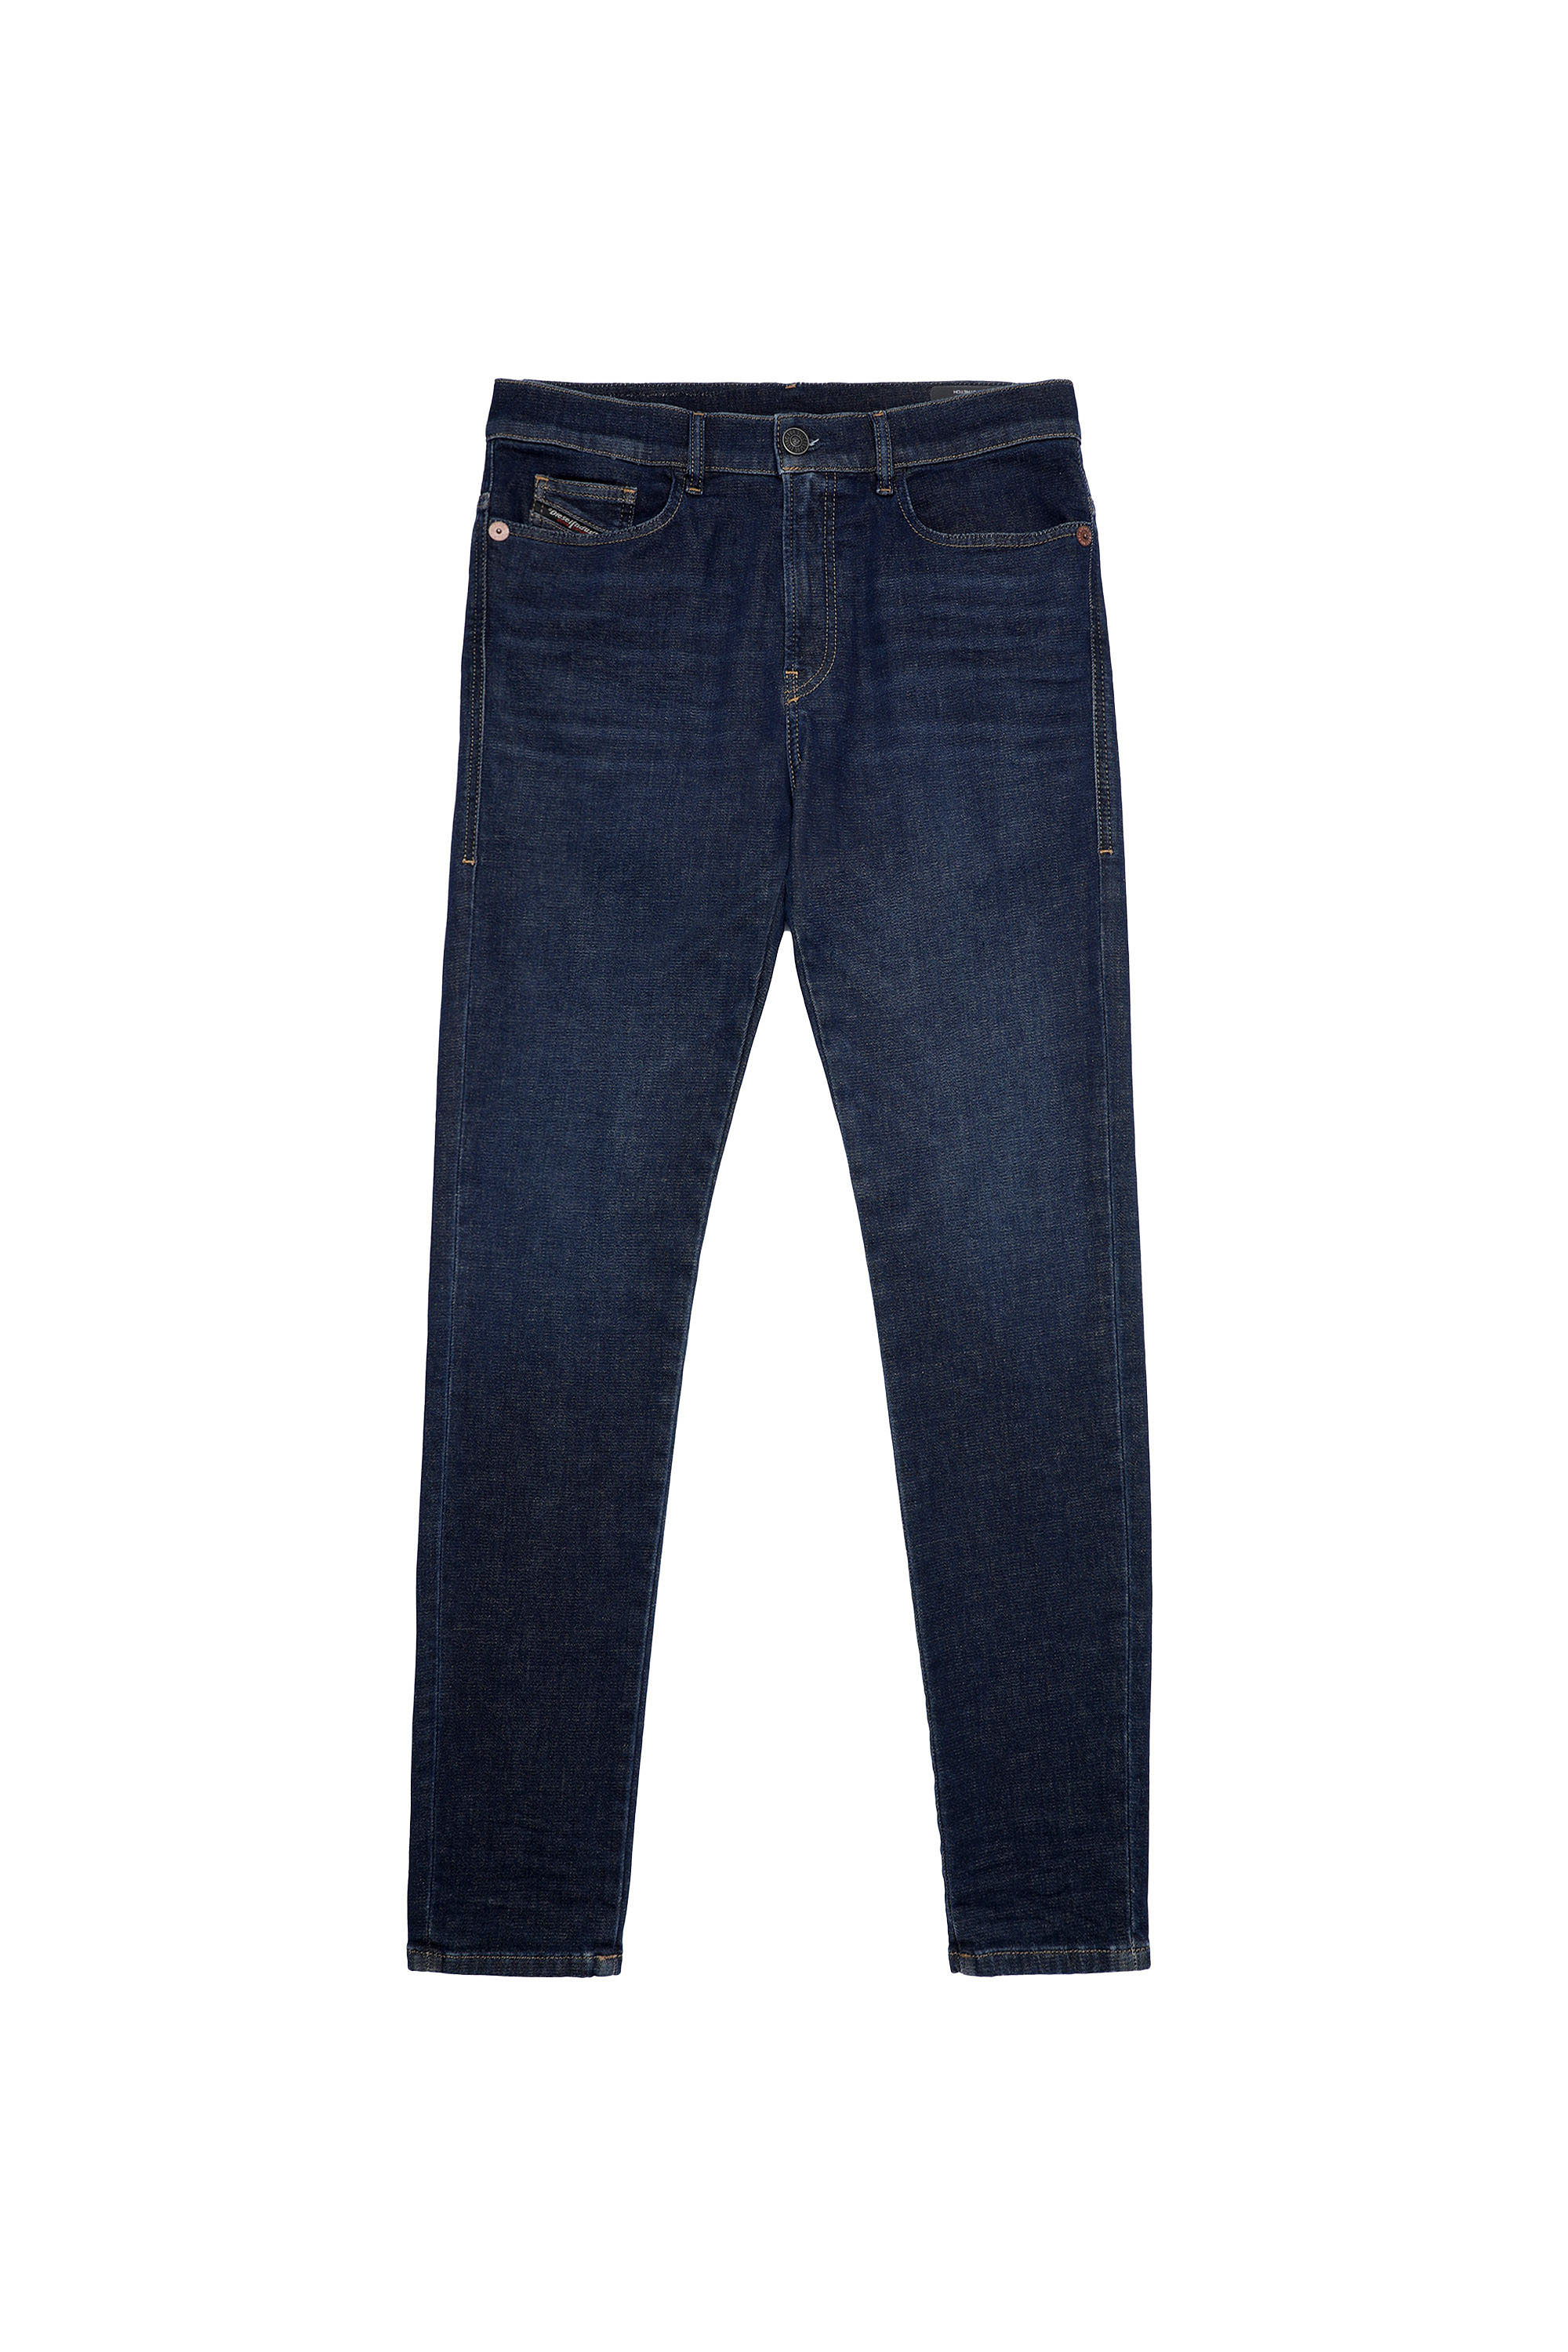 Diesel - D-Amny Skinny JoggJeans® Z69VI, Dark Blue - Image 6